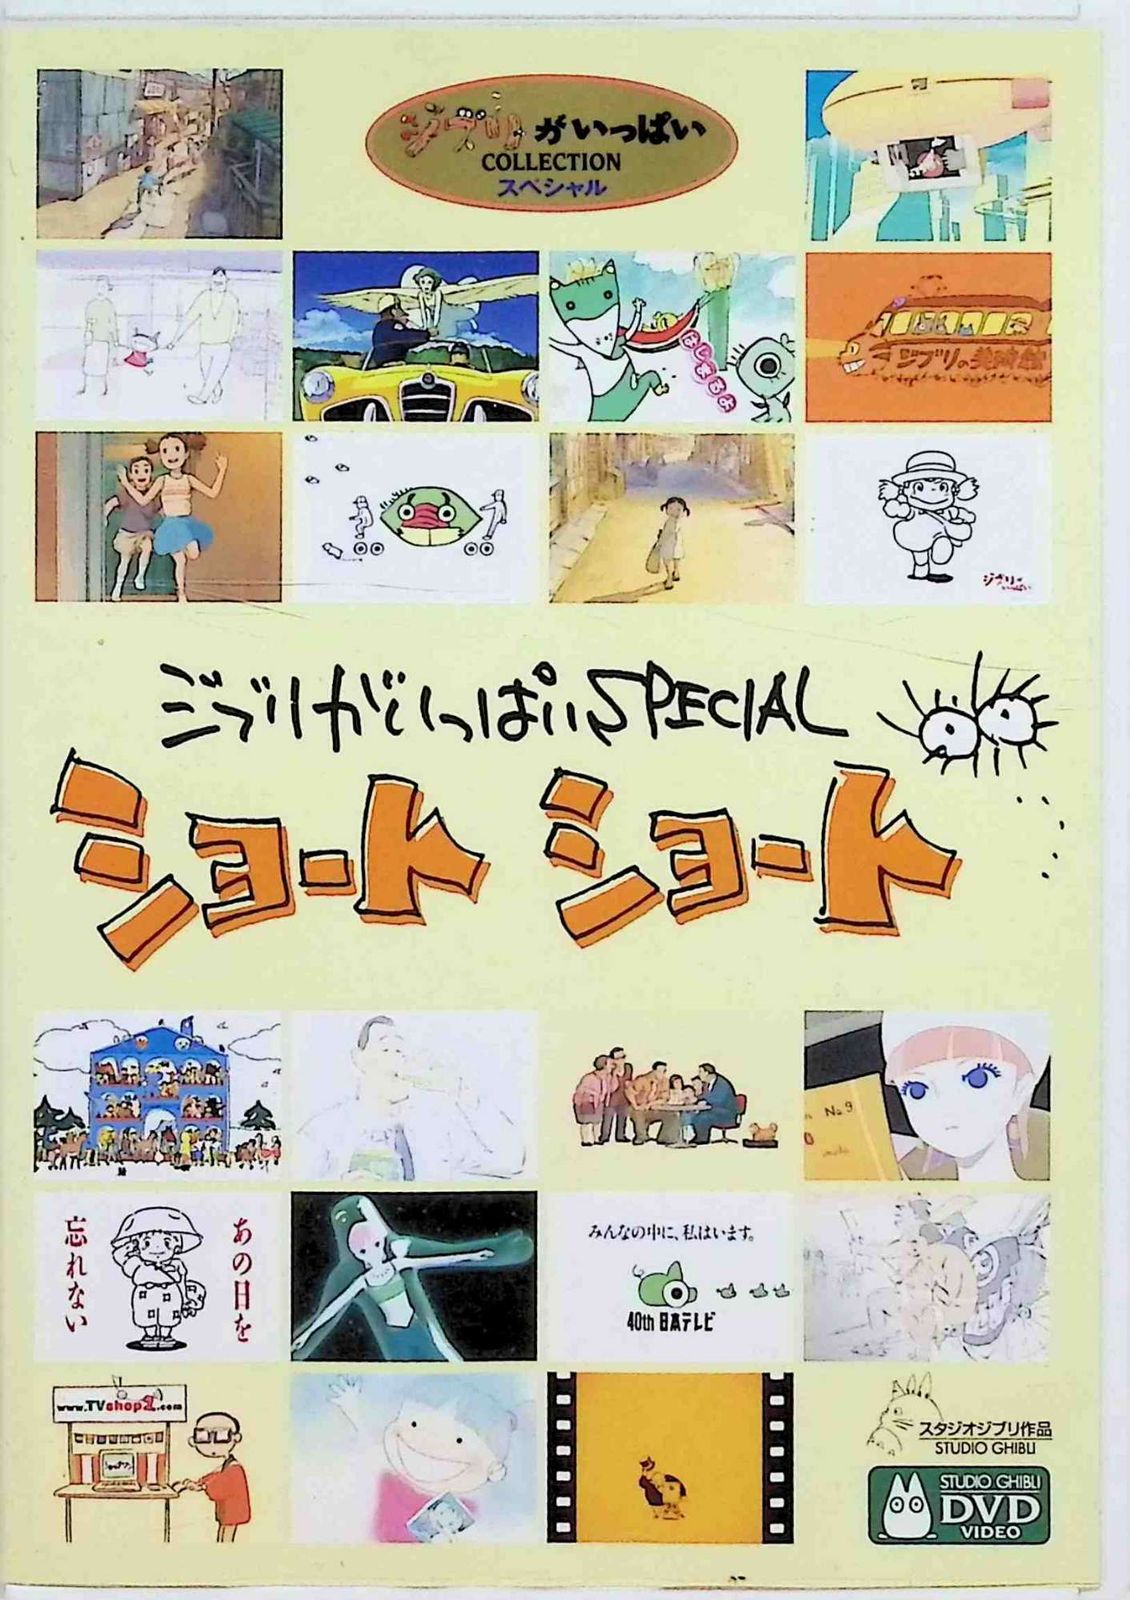 ジブリがいっぱいSPECIALショートショート (DVD) - メルカリ